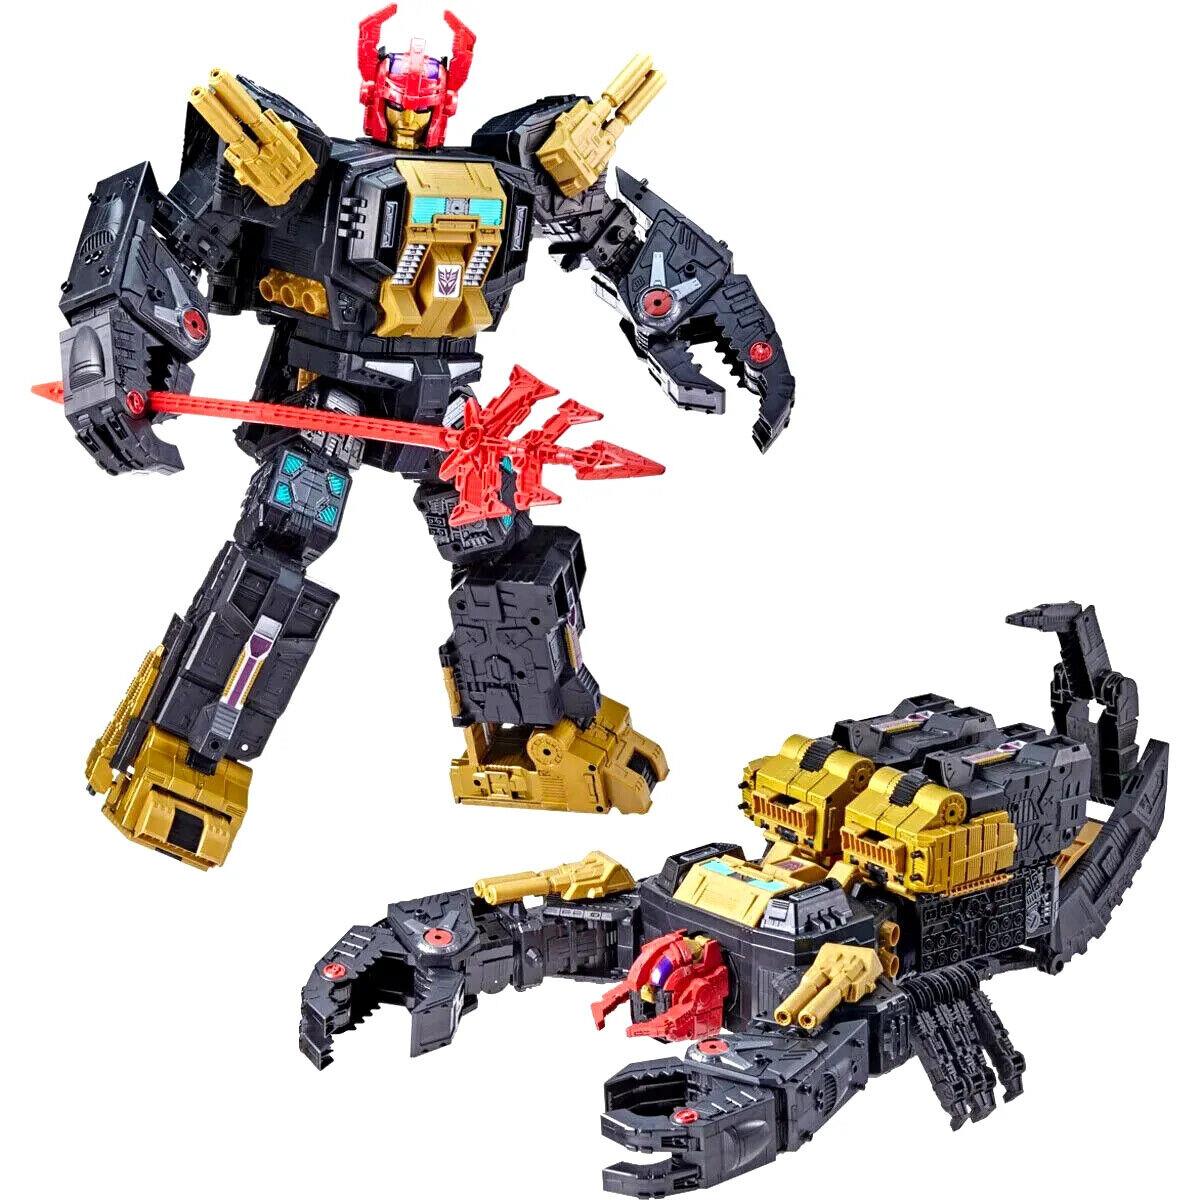 Transformers X2 Black Zarak Generations Select Titan Exclusive Cybertron Case